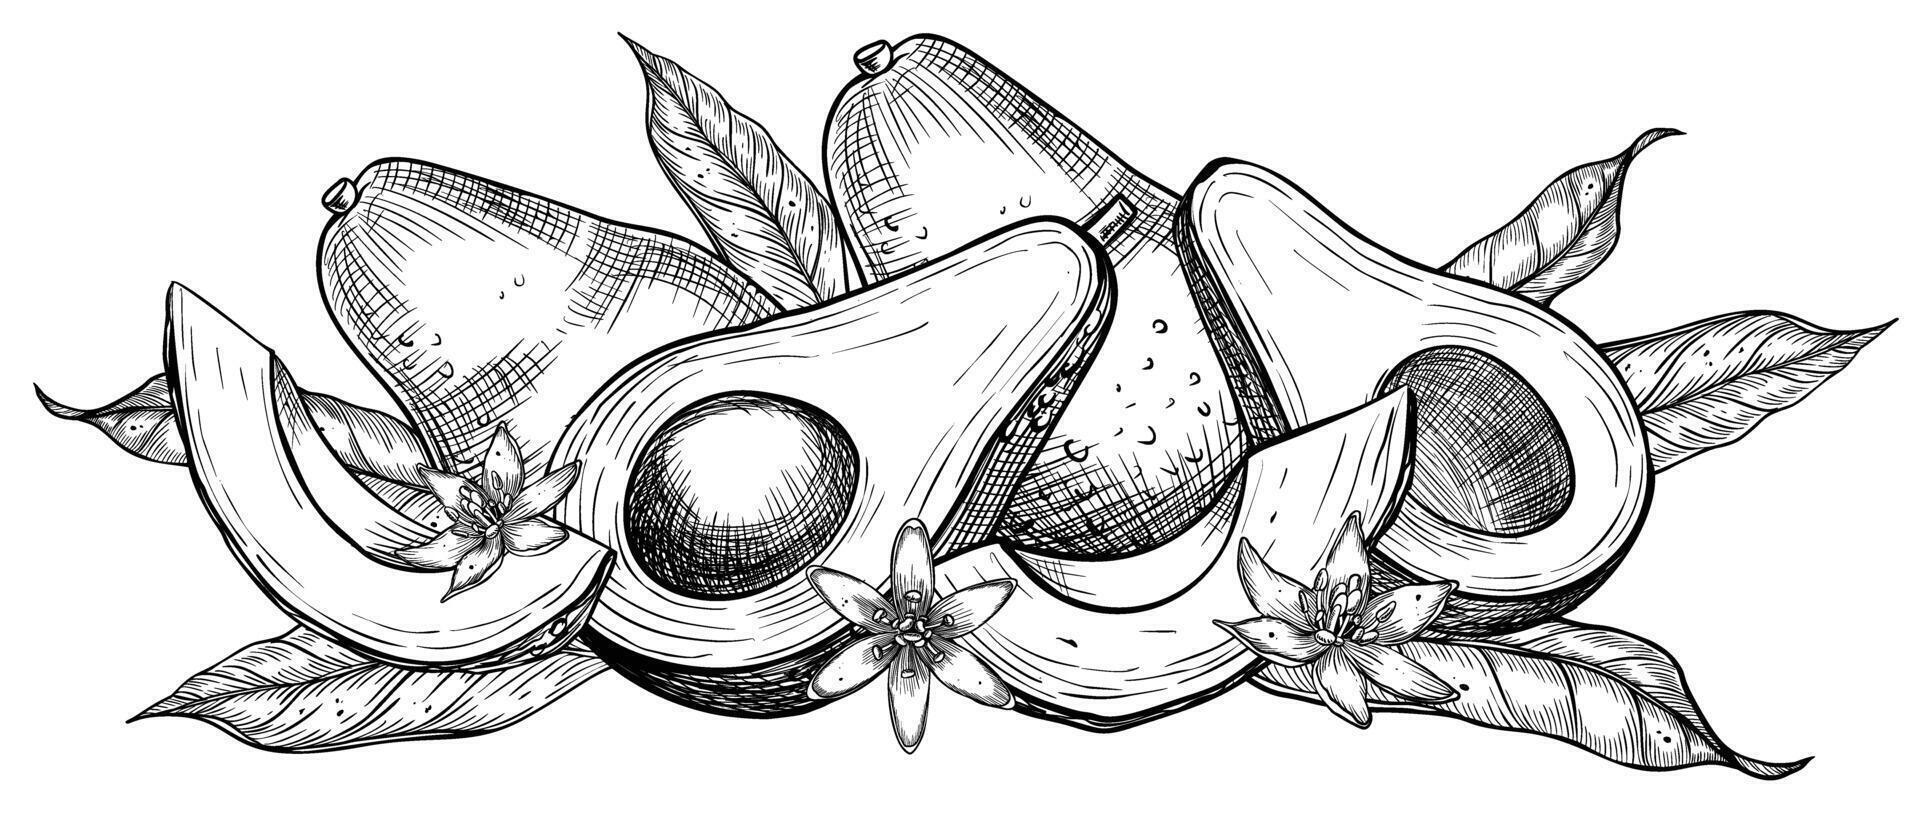 avokado illustration. botanisk teckning av frukt med blomma målad förbi svart bläck i linjär stil. gravyr av vegetabiliska med löv. etsning av vegan mat för recept och kokböcker vektor